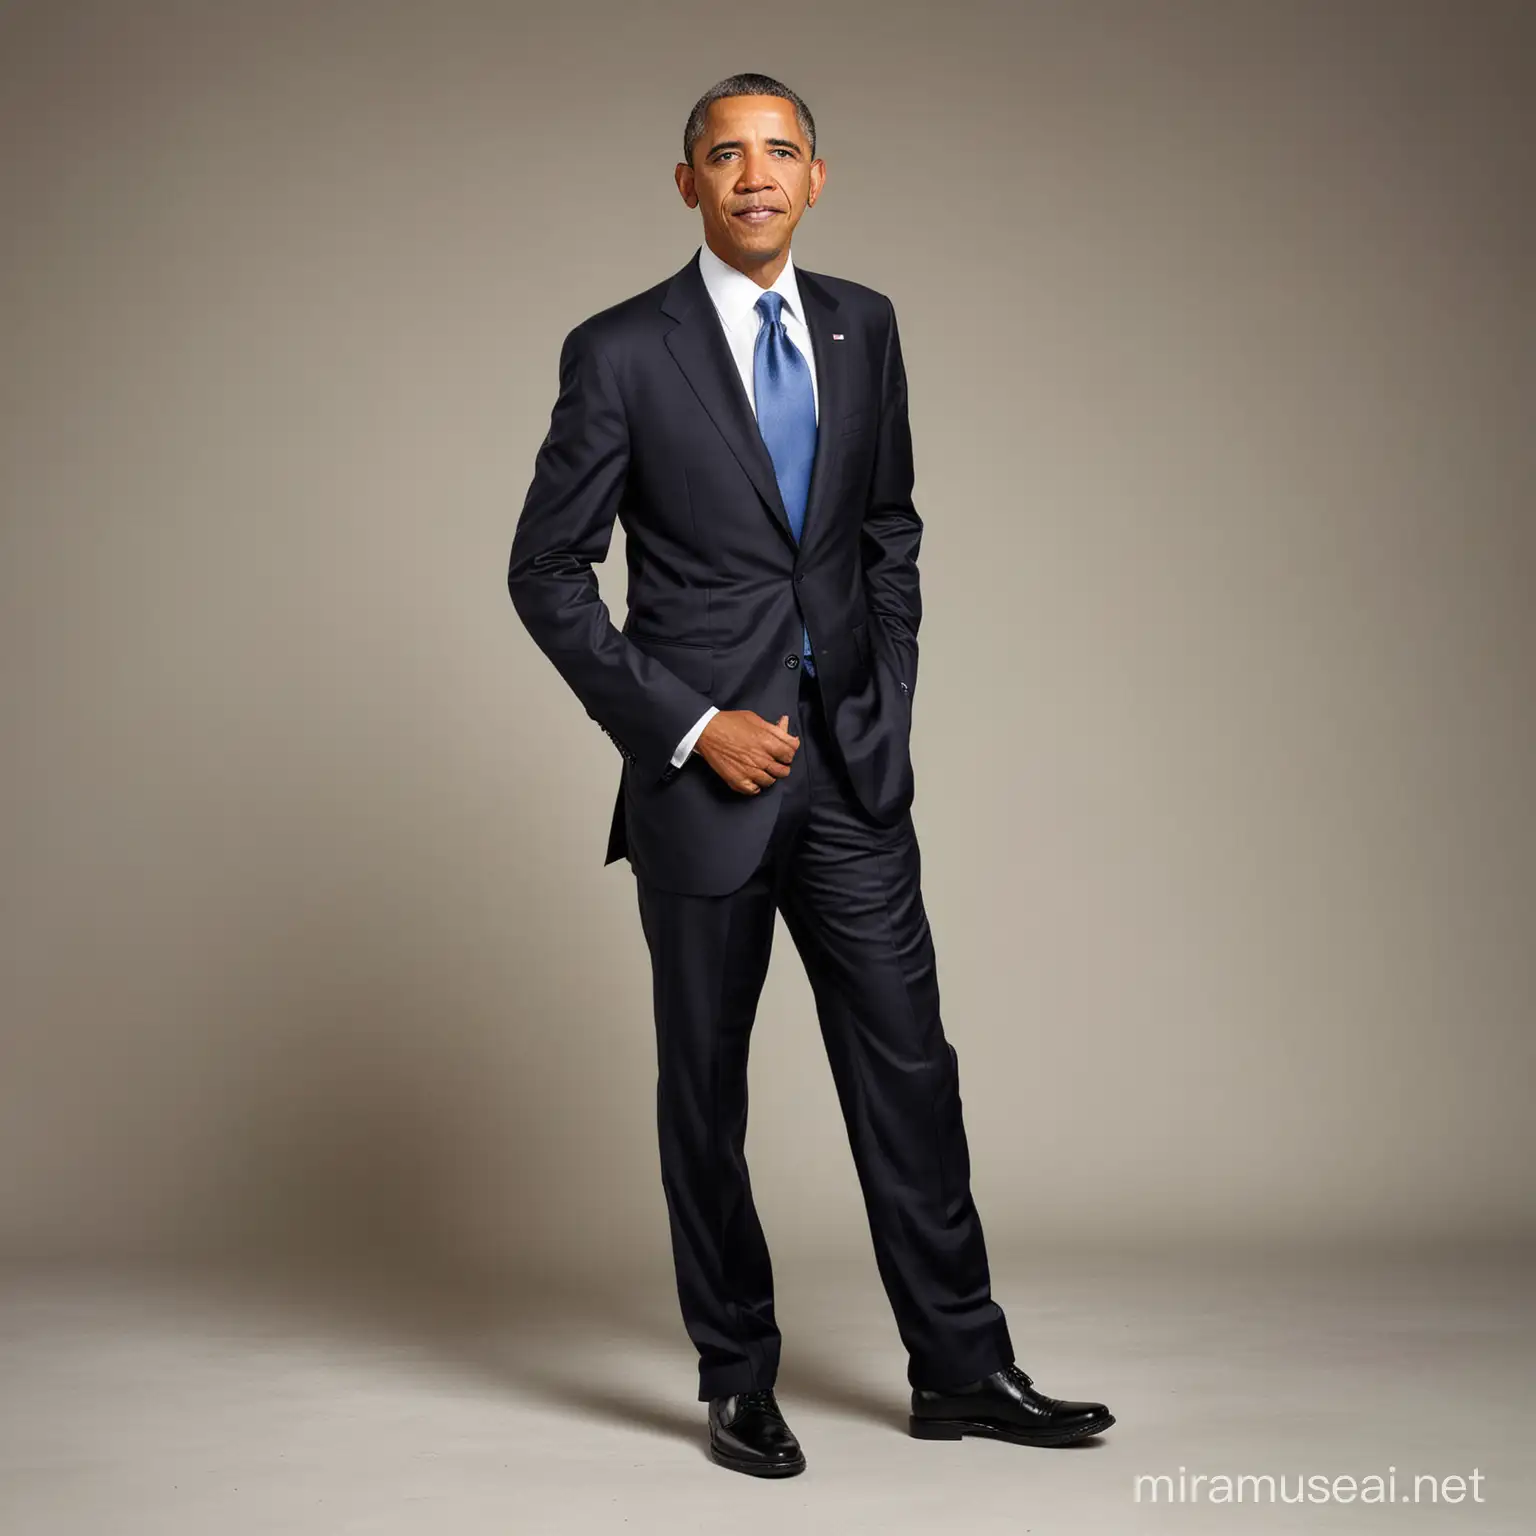 Goofy Photo of Obama Playful Full Body Profile